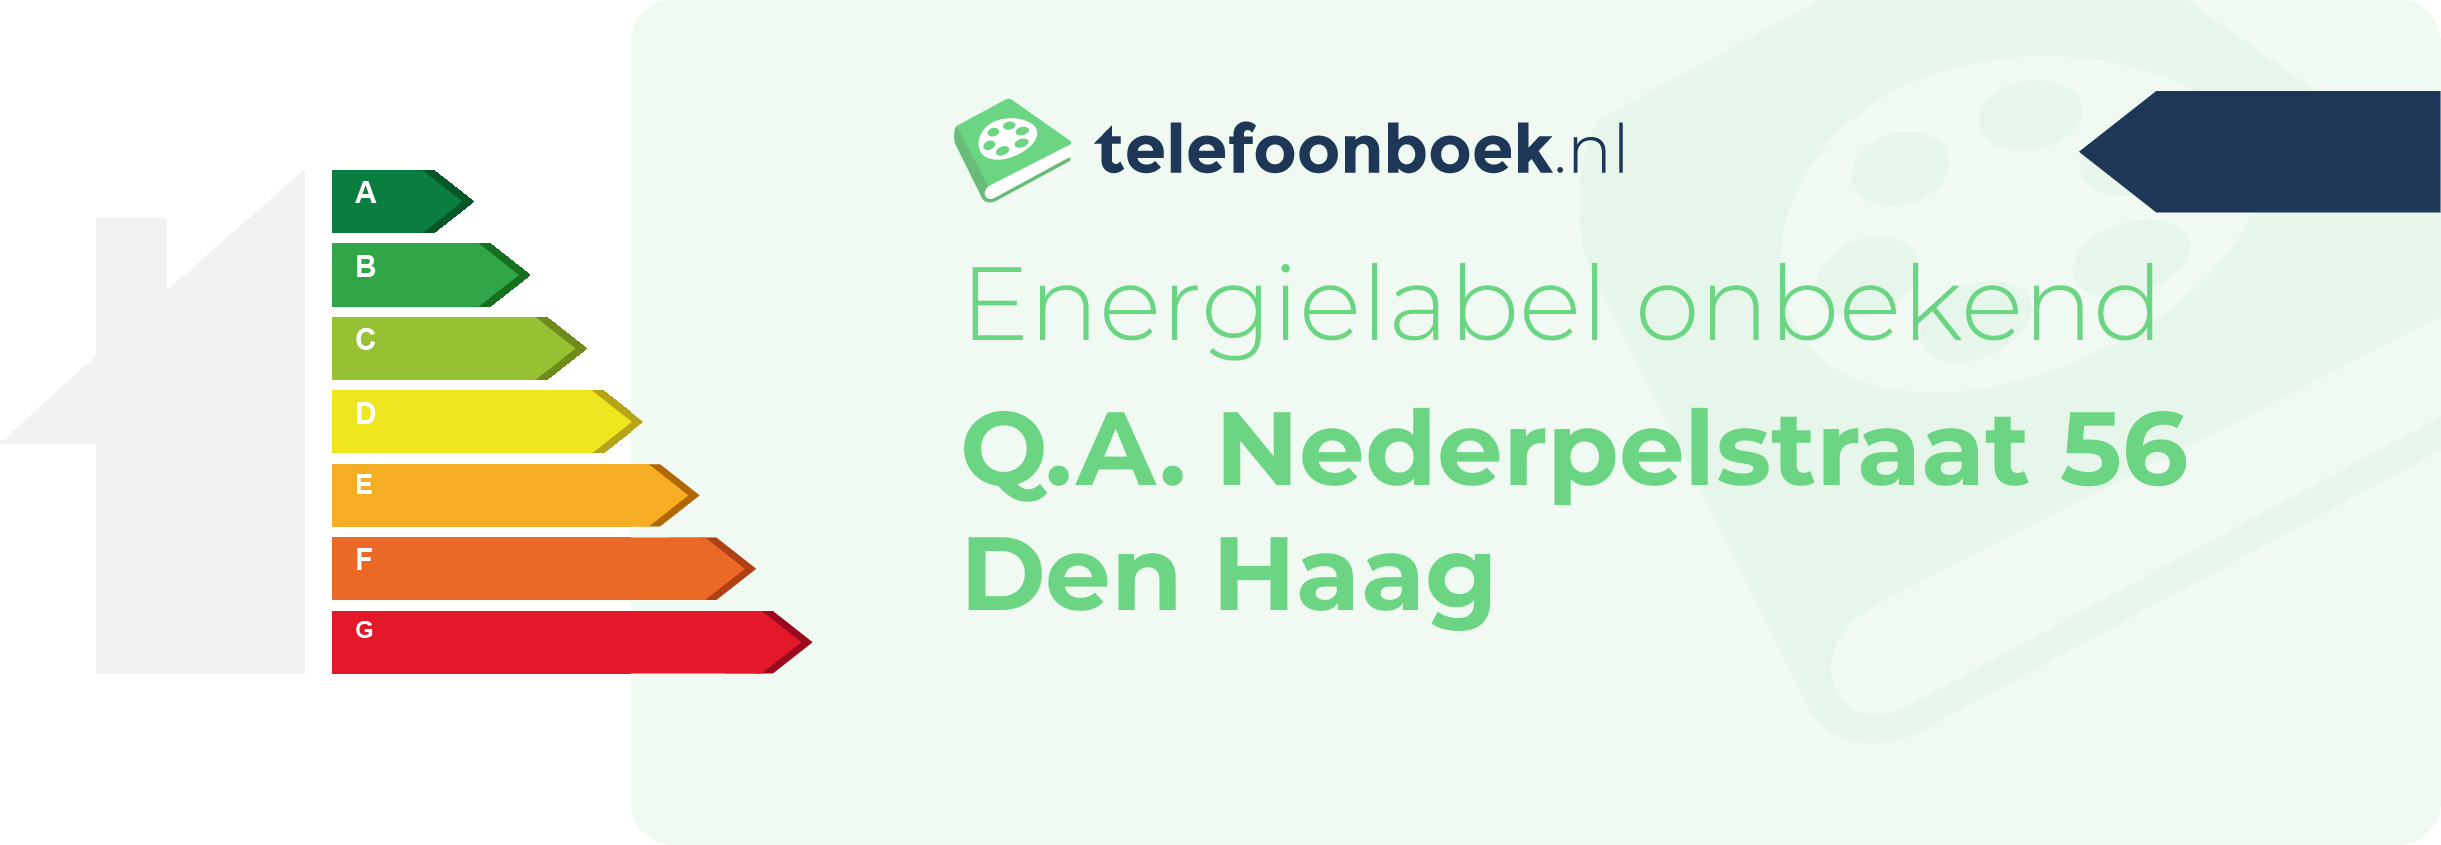 Energielabel Q.A. Nederpelstraat 56 Den Haag